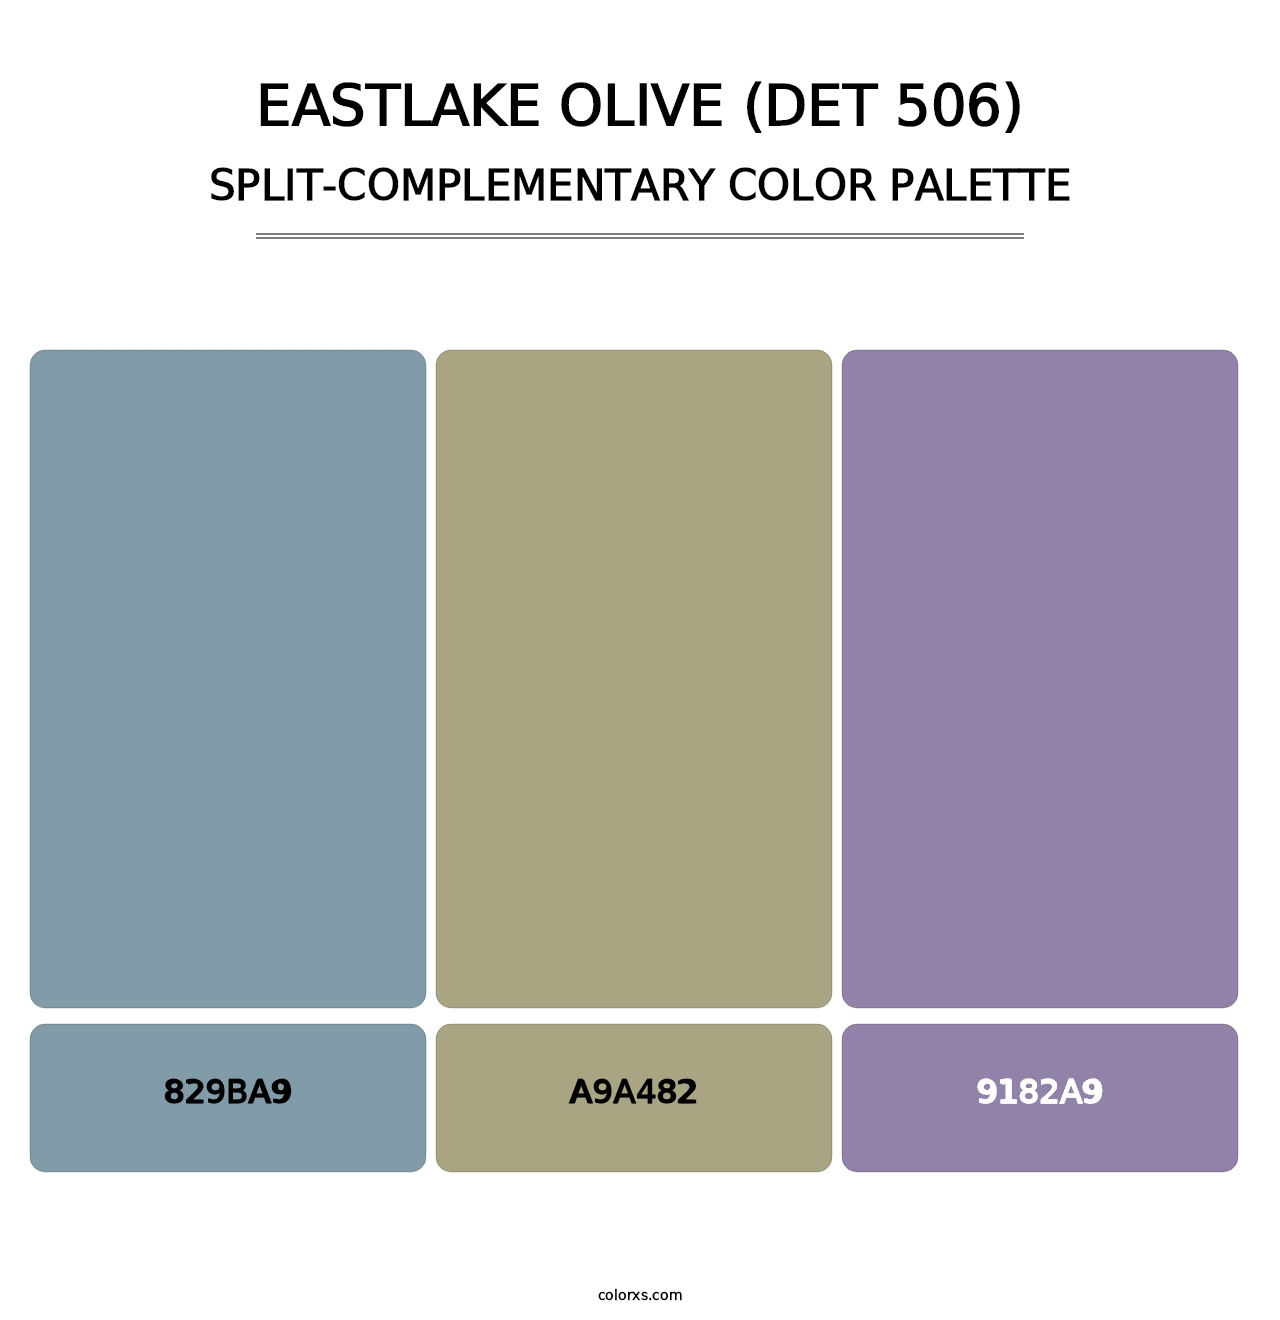 Eastlake Olive (DET 506) - Split-Complementary Color Palette